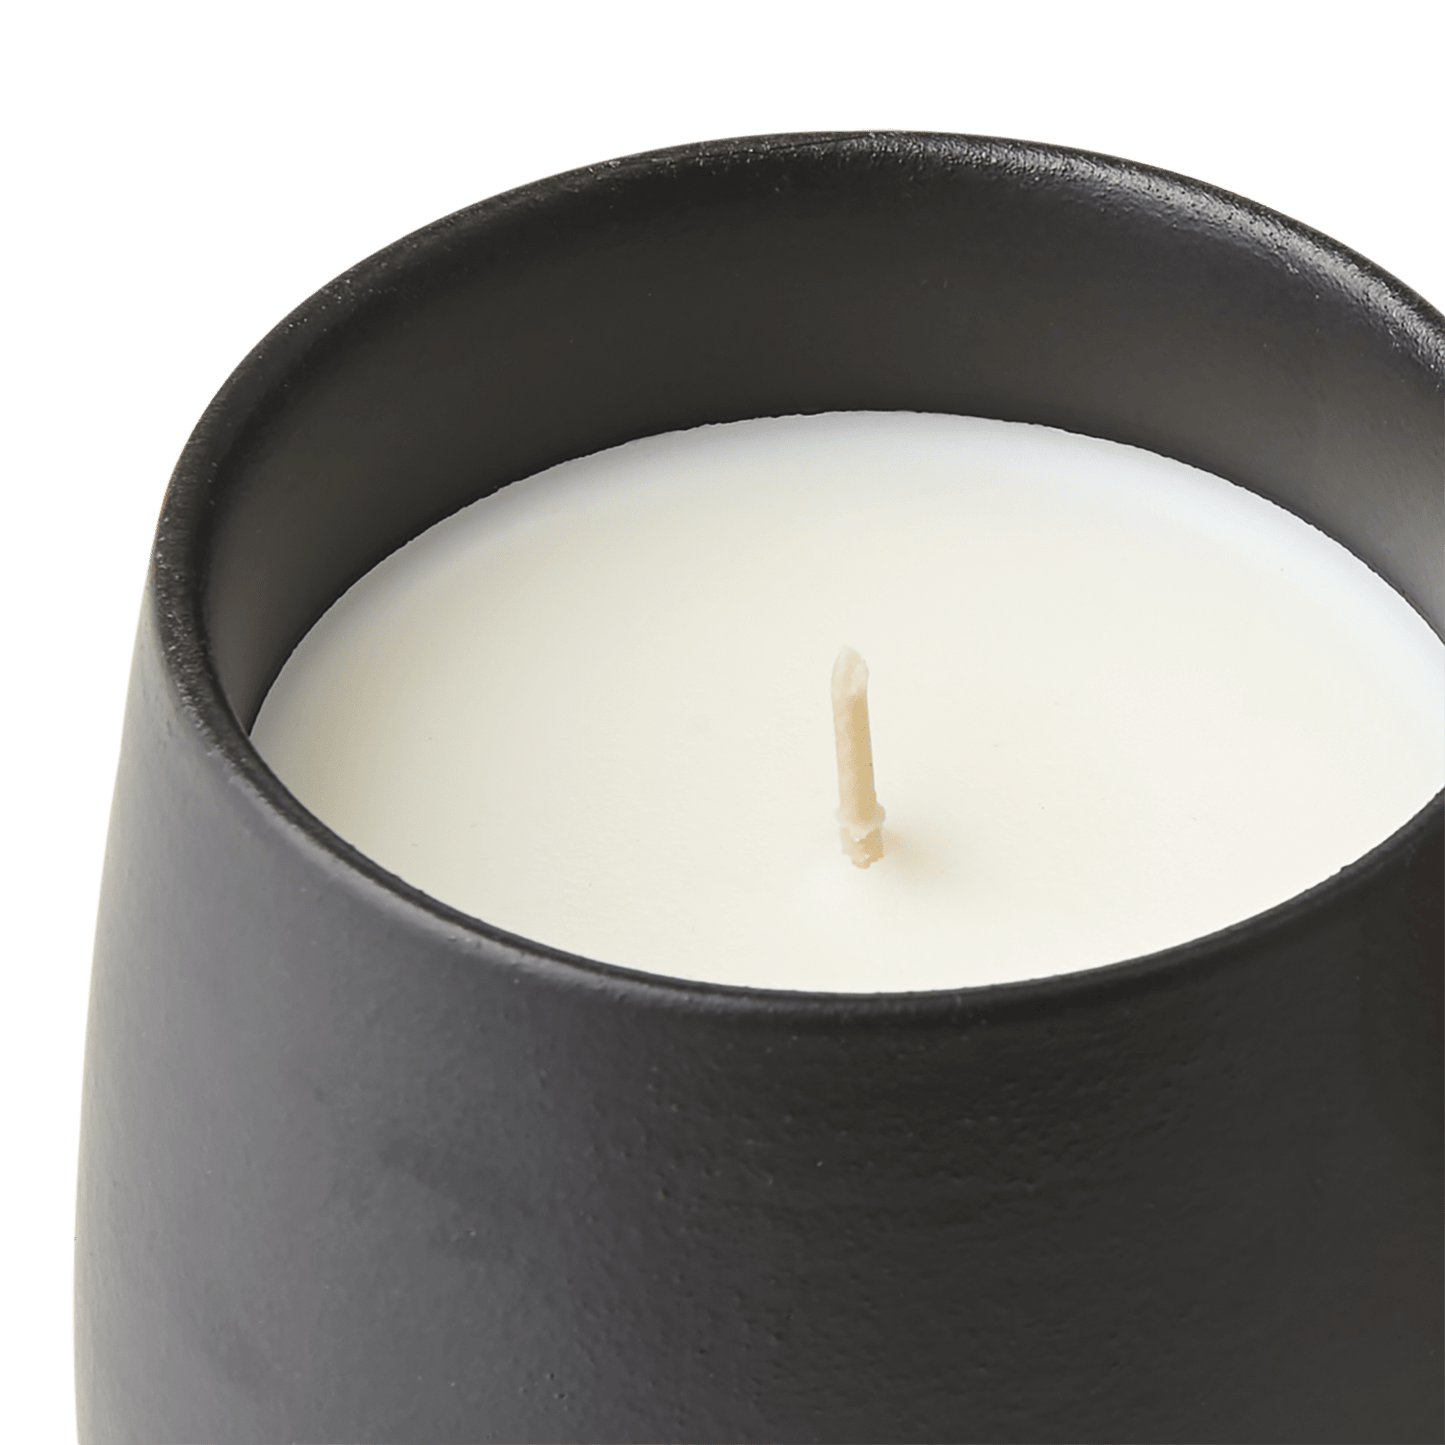 Oppdag Ro Indo Teak, et duftlys fra Affari som fyller hjemmet ditt med en herlig duft og stemning. Duftlyset er tappet i en keramikk krukke som kan gjenbrukes. Gaveeske medfølger.